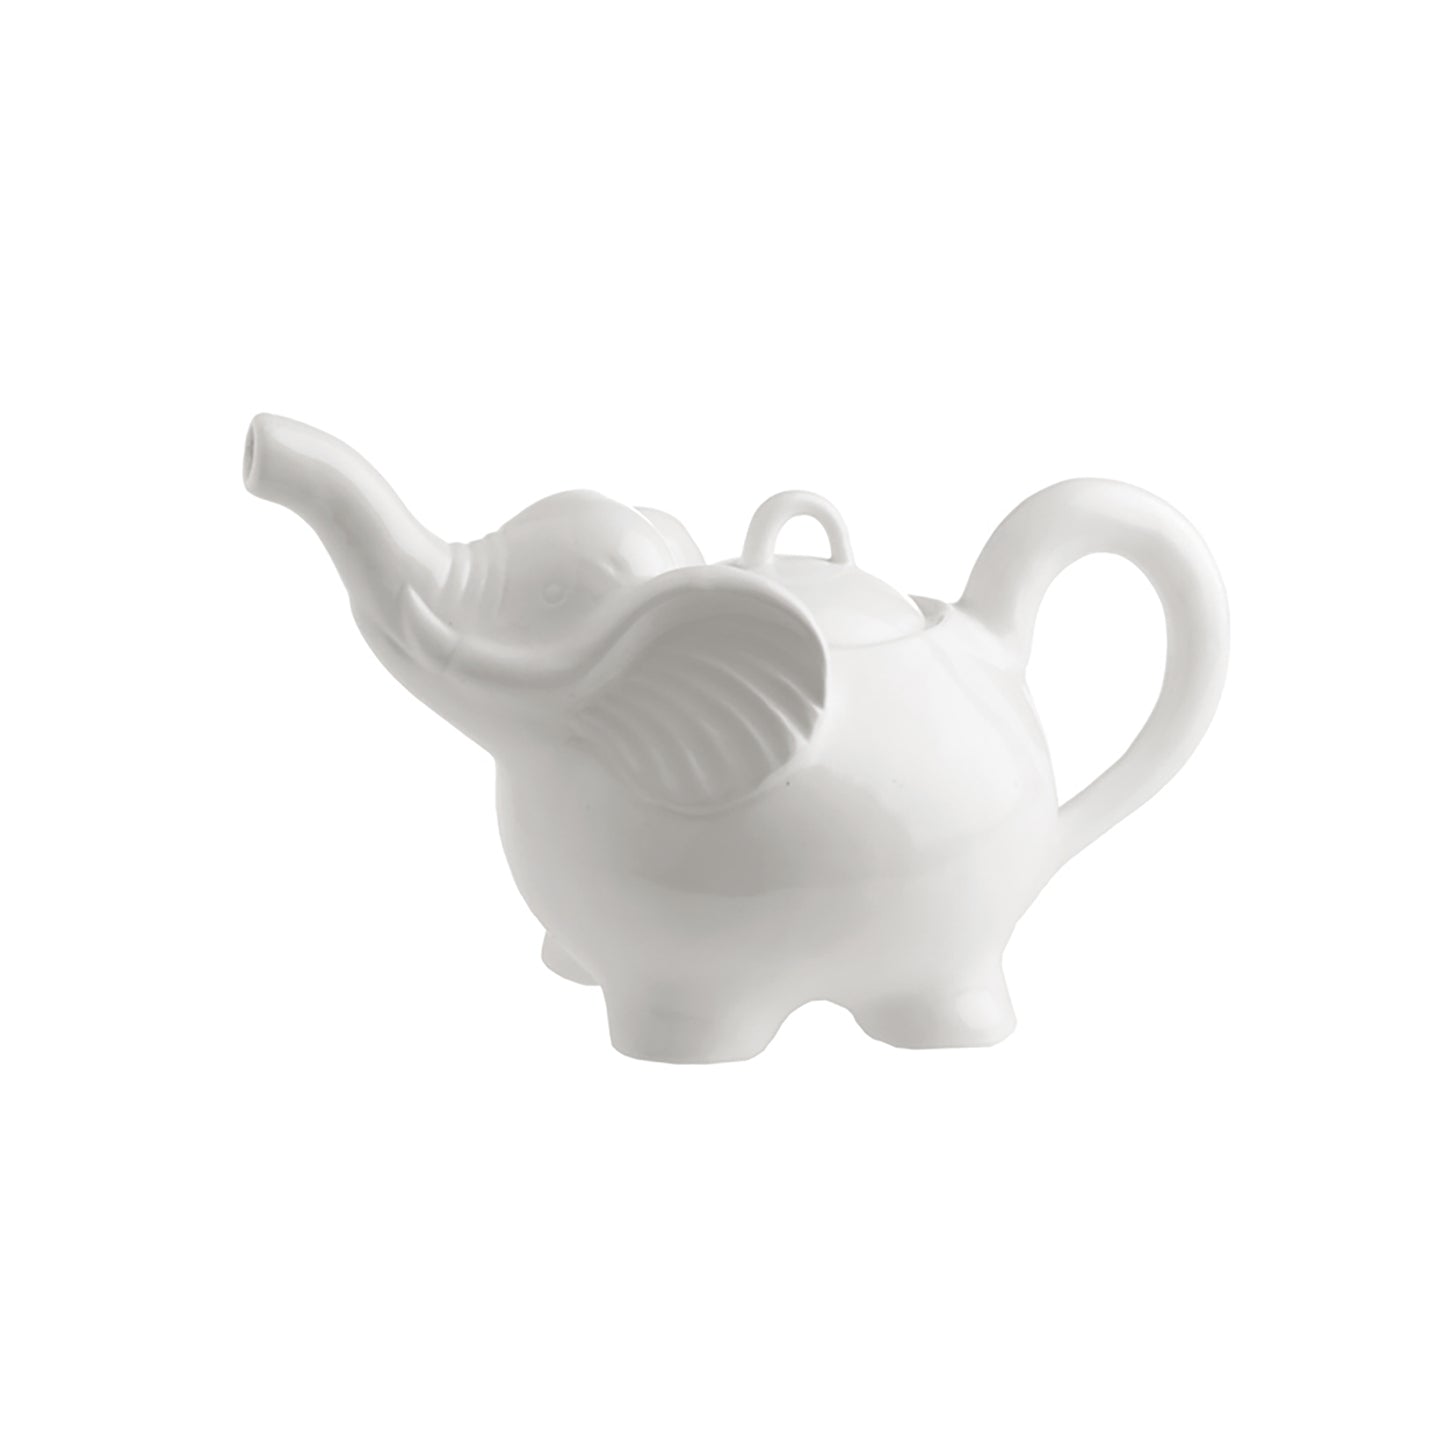 Teiera in porcellana bianca con coperchio a forma di elefante. cc 750. Dimensioni : 13x24xh14 cm. In negozio e online su tuttochic.it